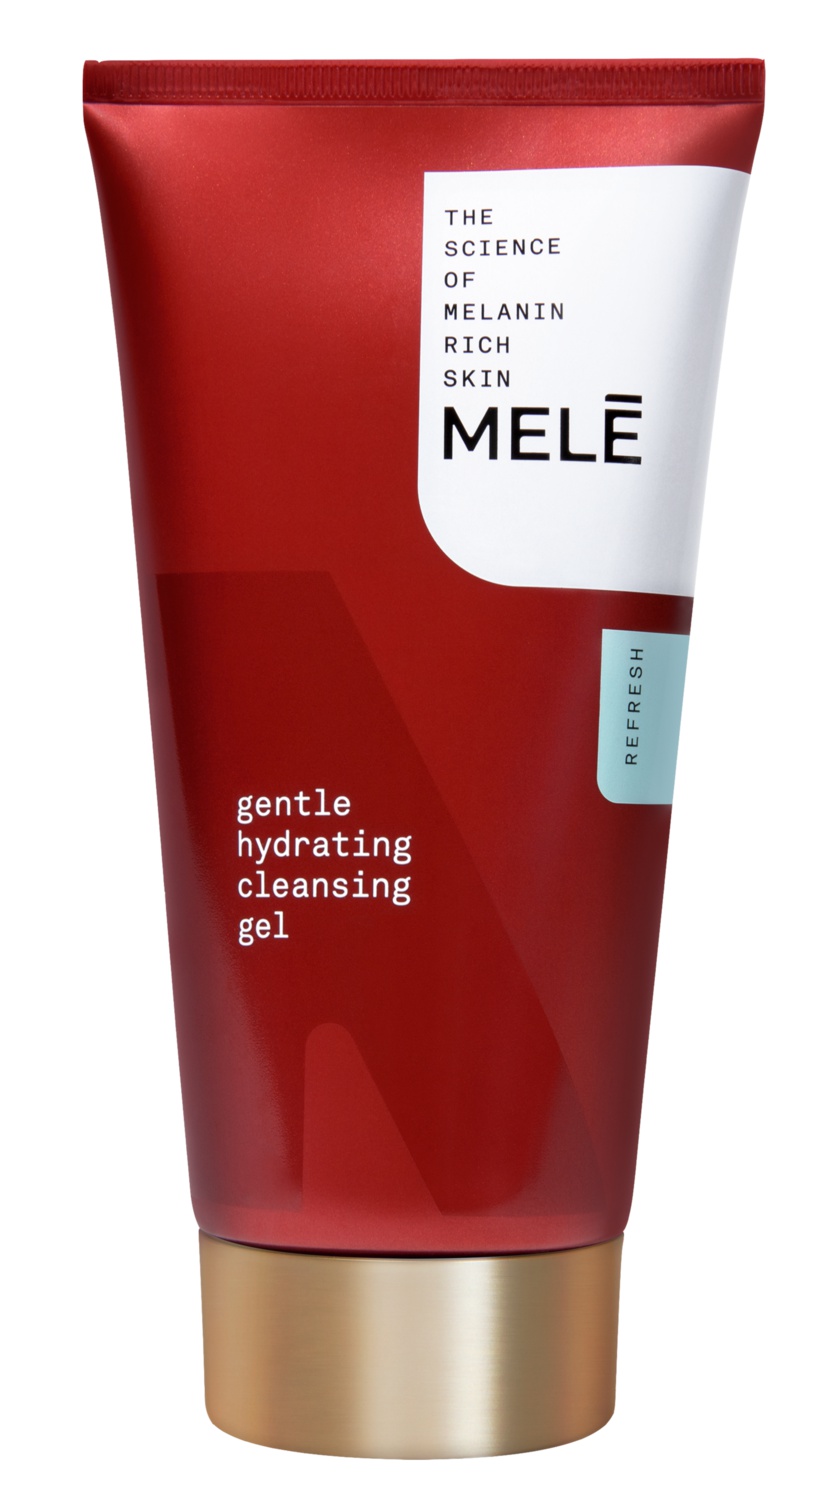 Mele Gentle Hydrating Cleansing Gel